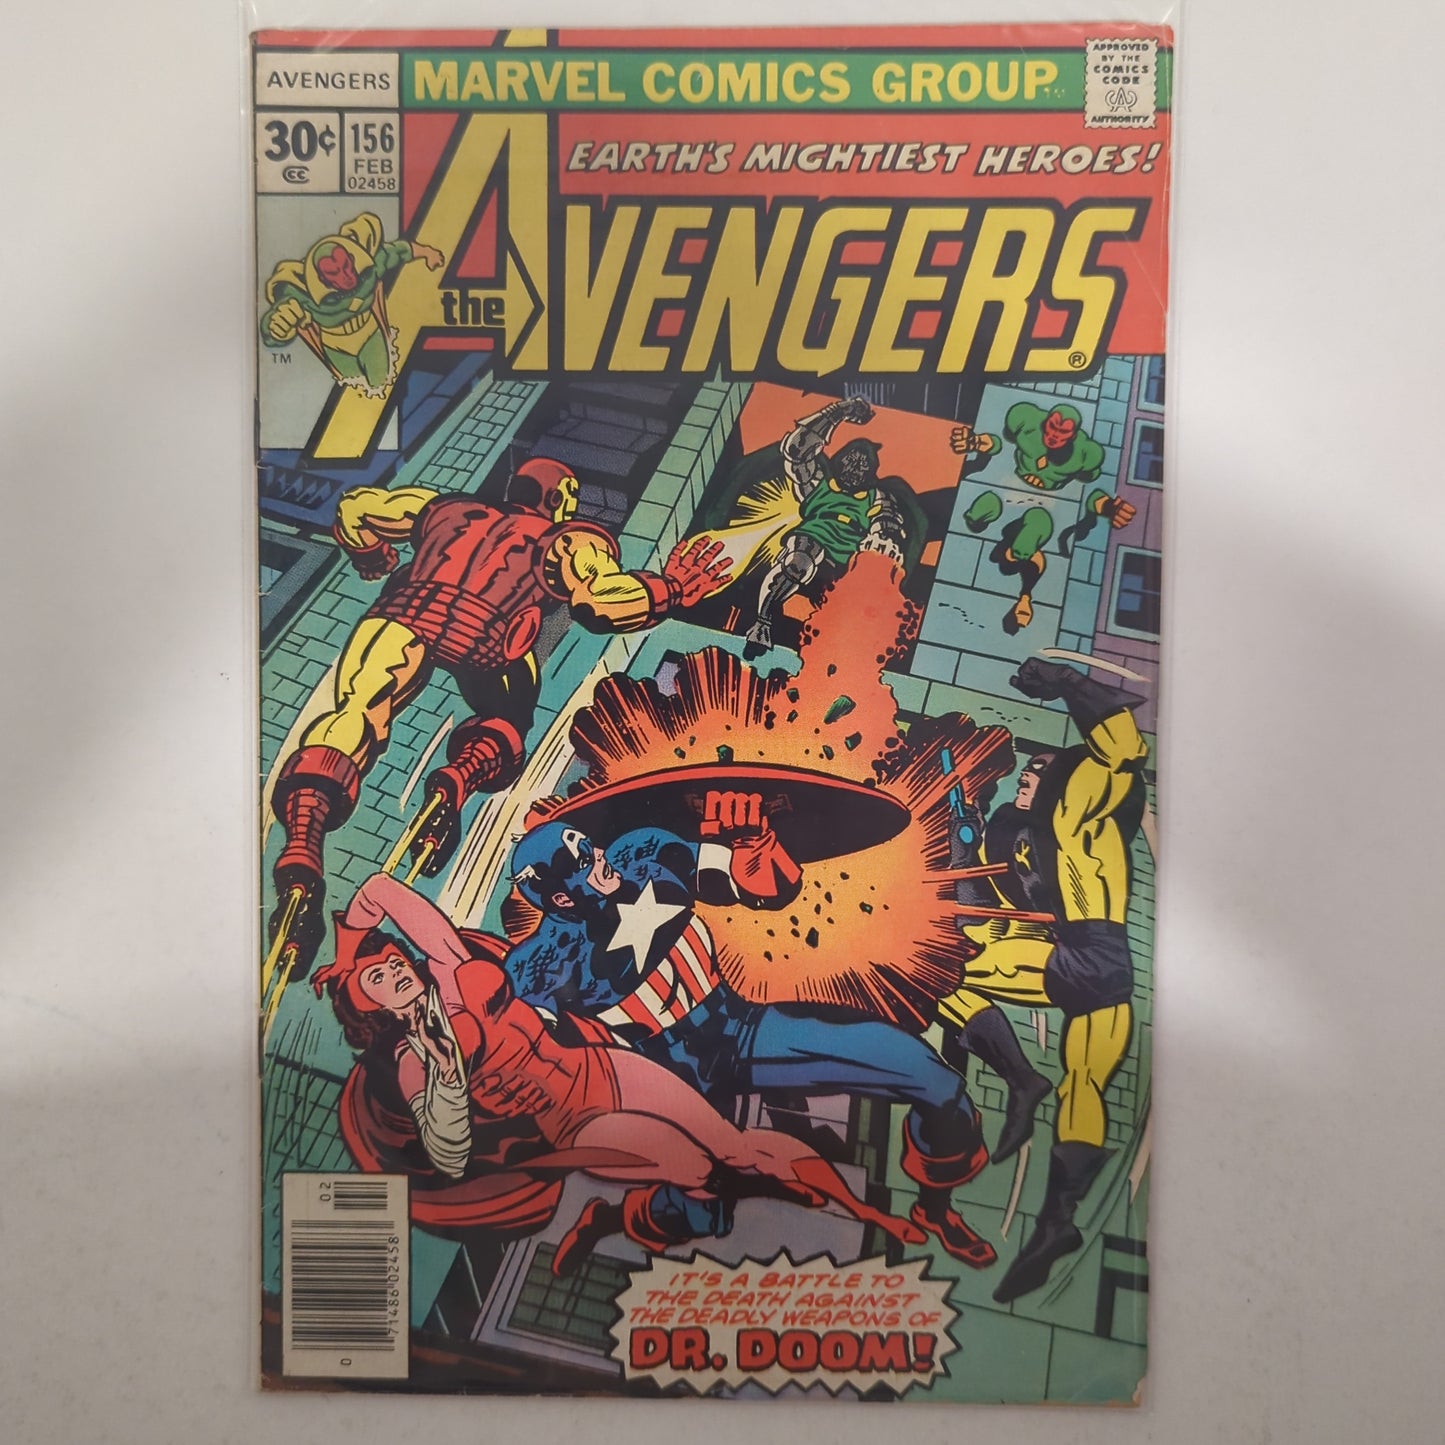 Avengers #156 Newsstand